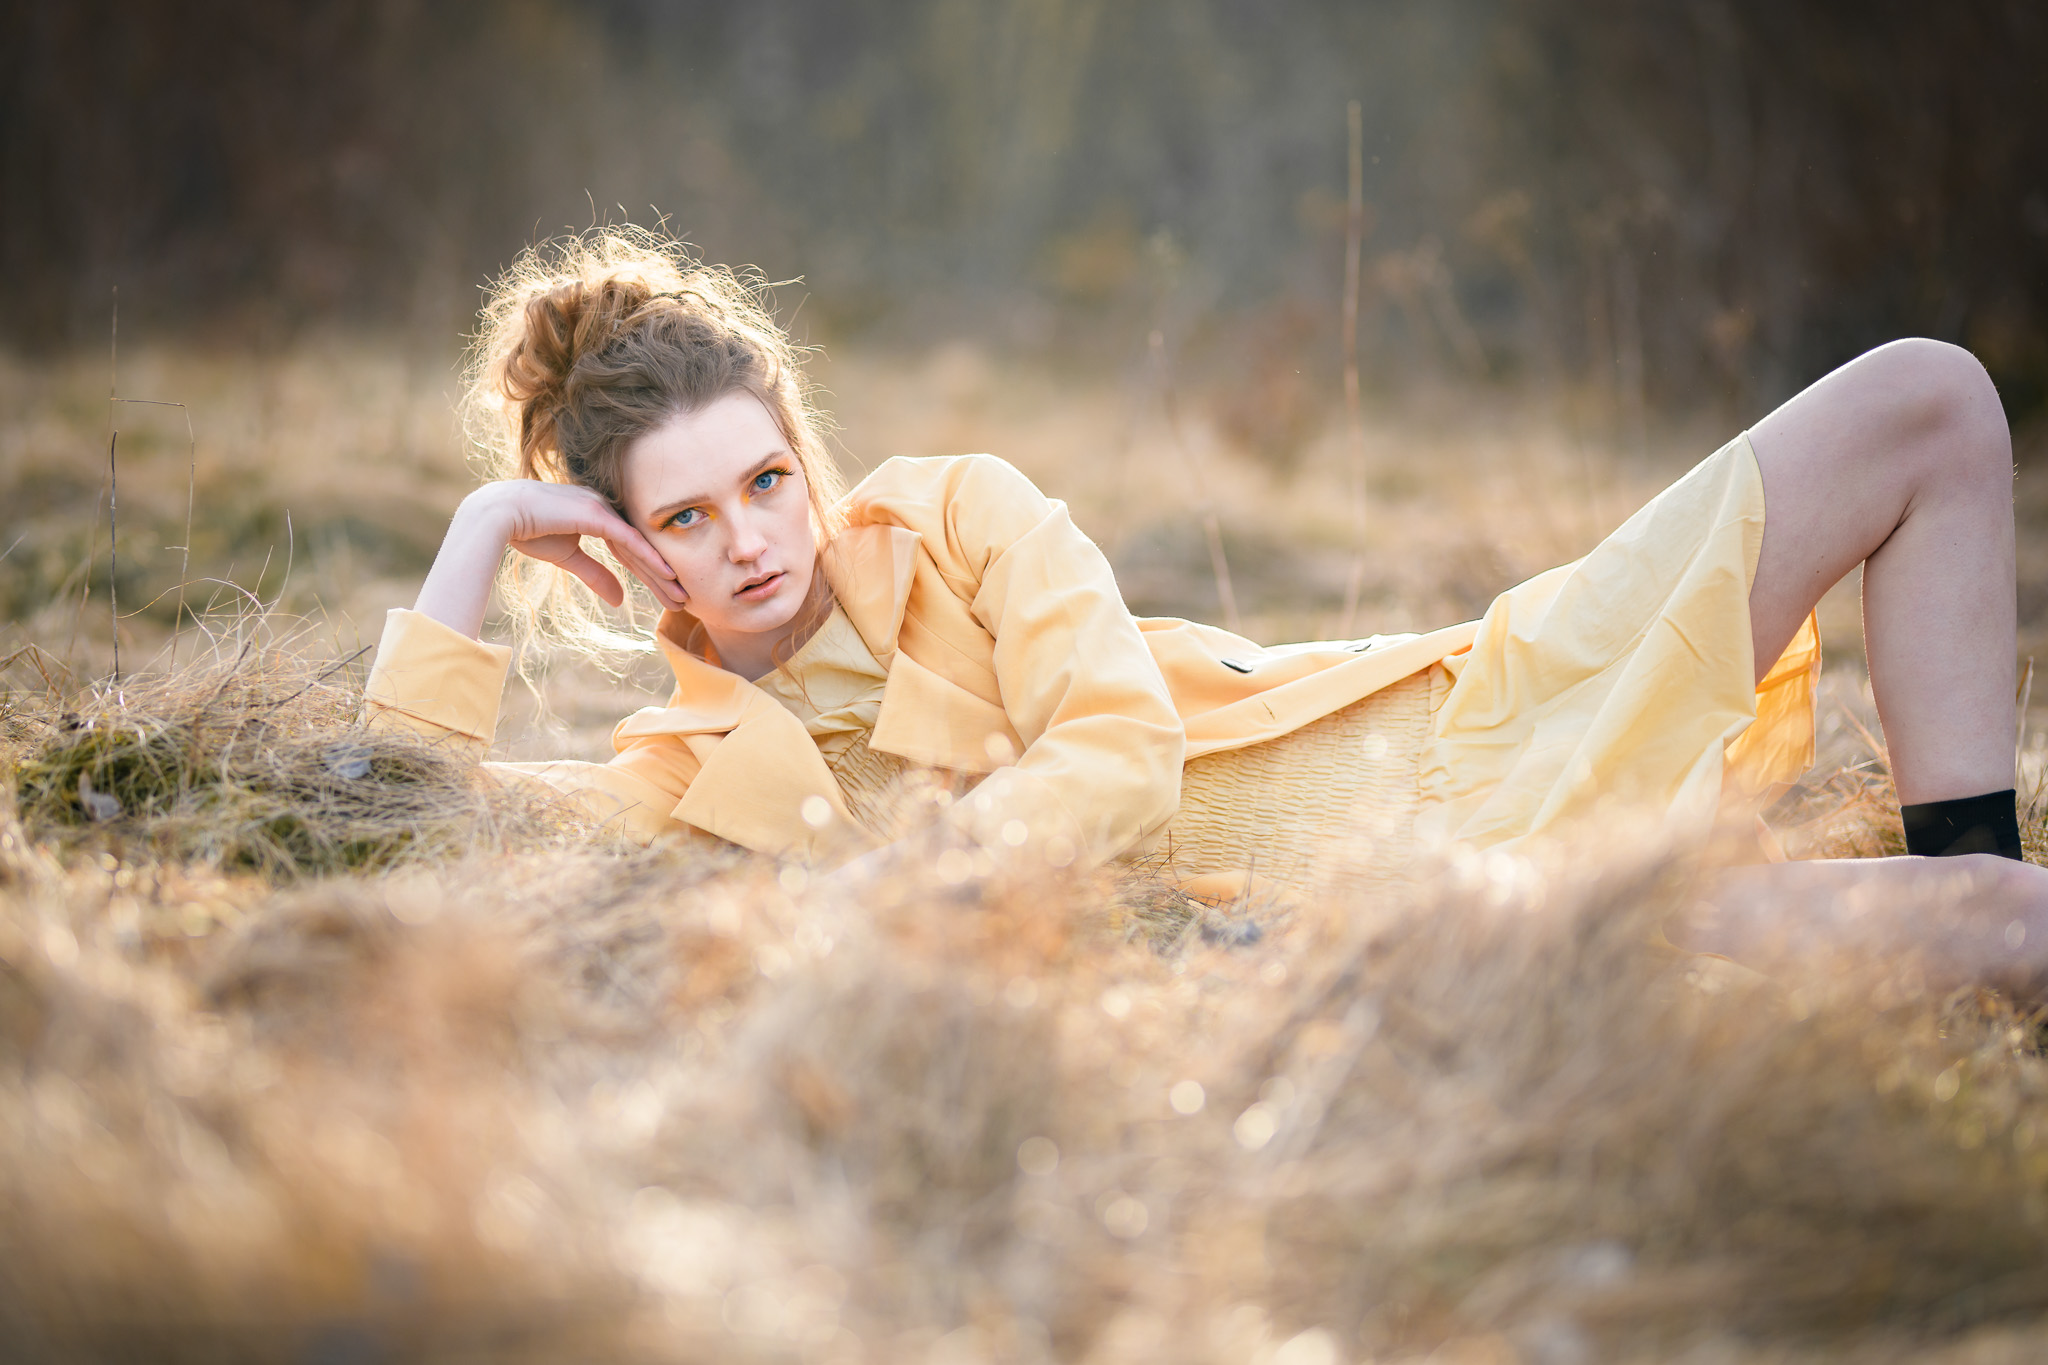 Egoboost-porträtt, Modefotografering. Modell ligger i gul rock på en äng med dött gräs i en kaxig pose.